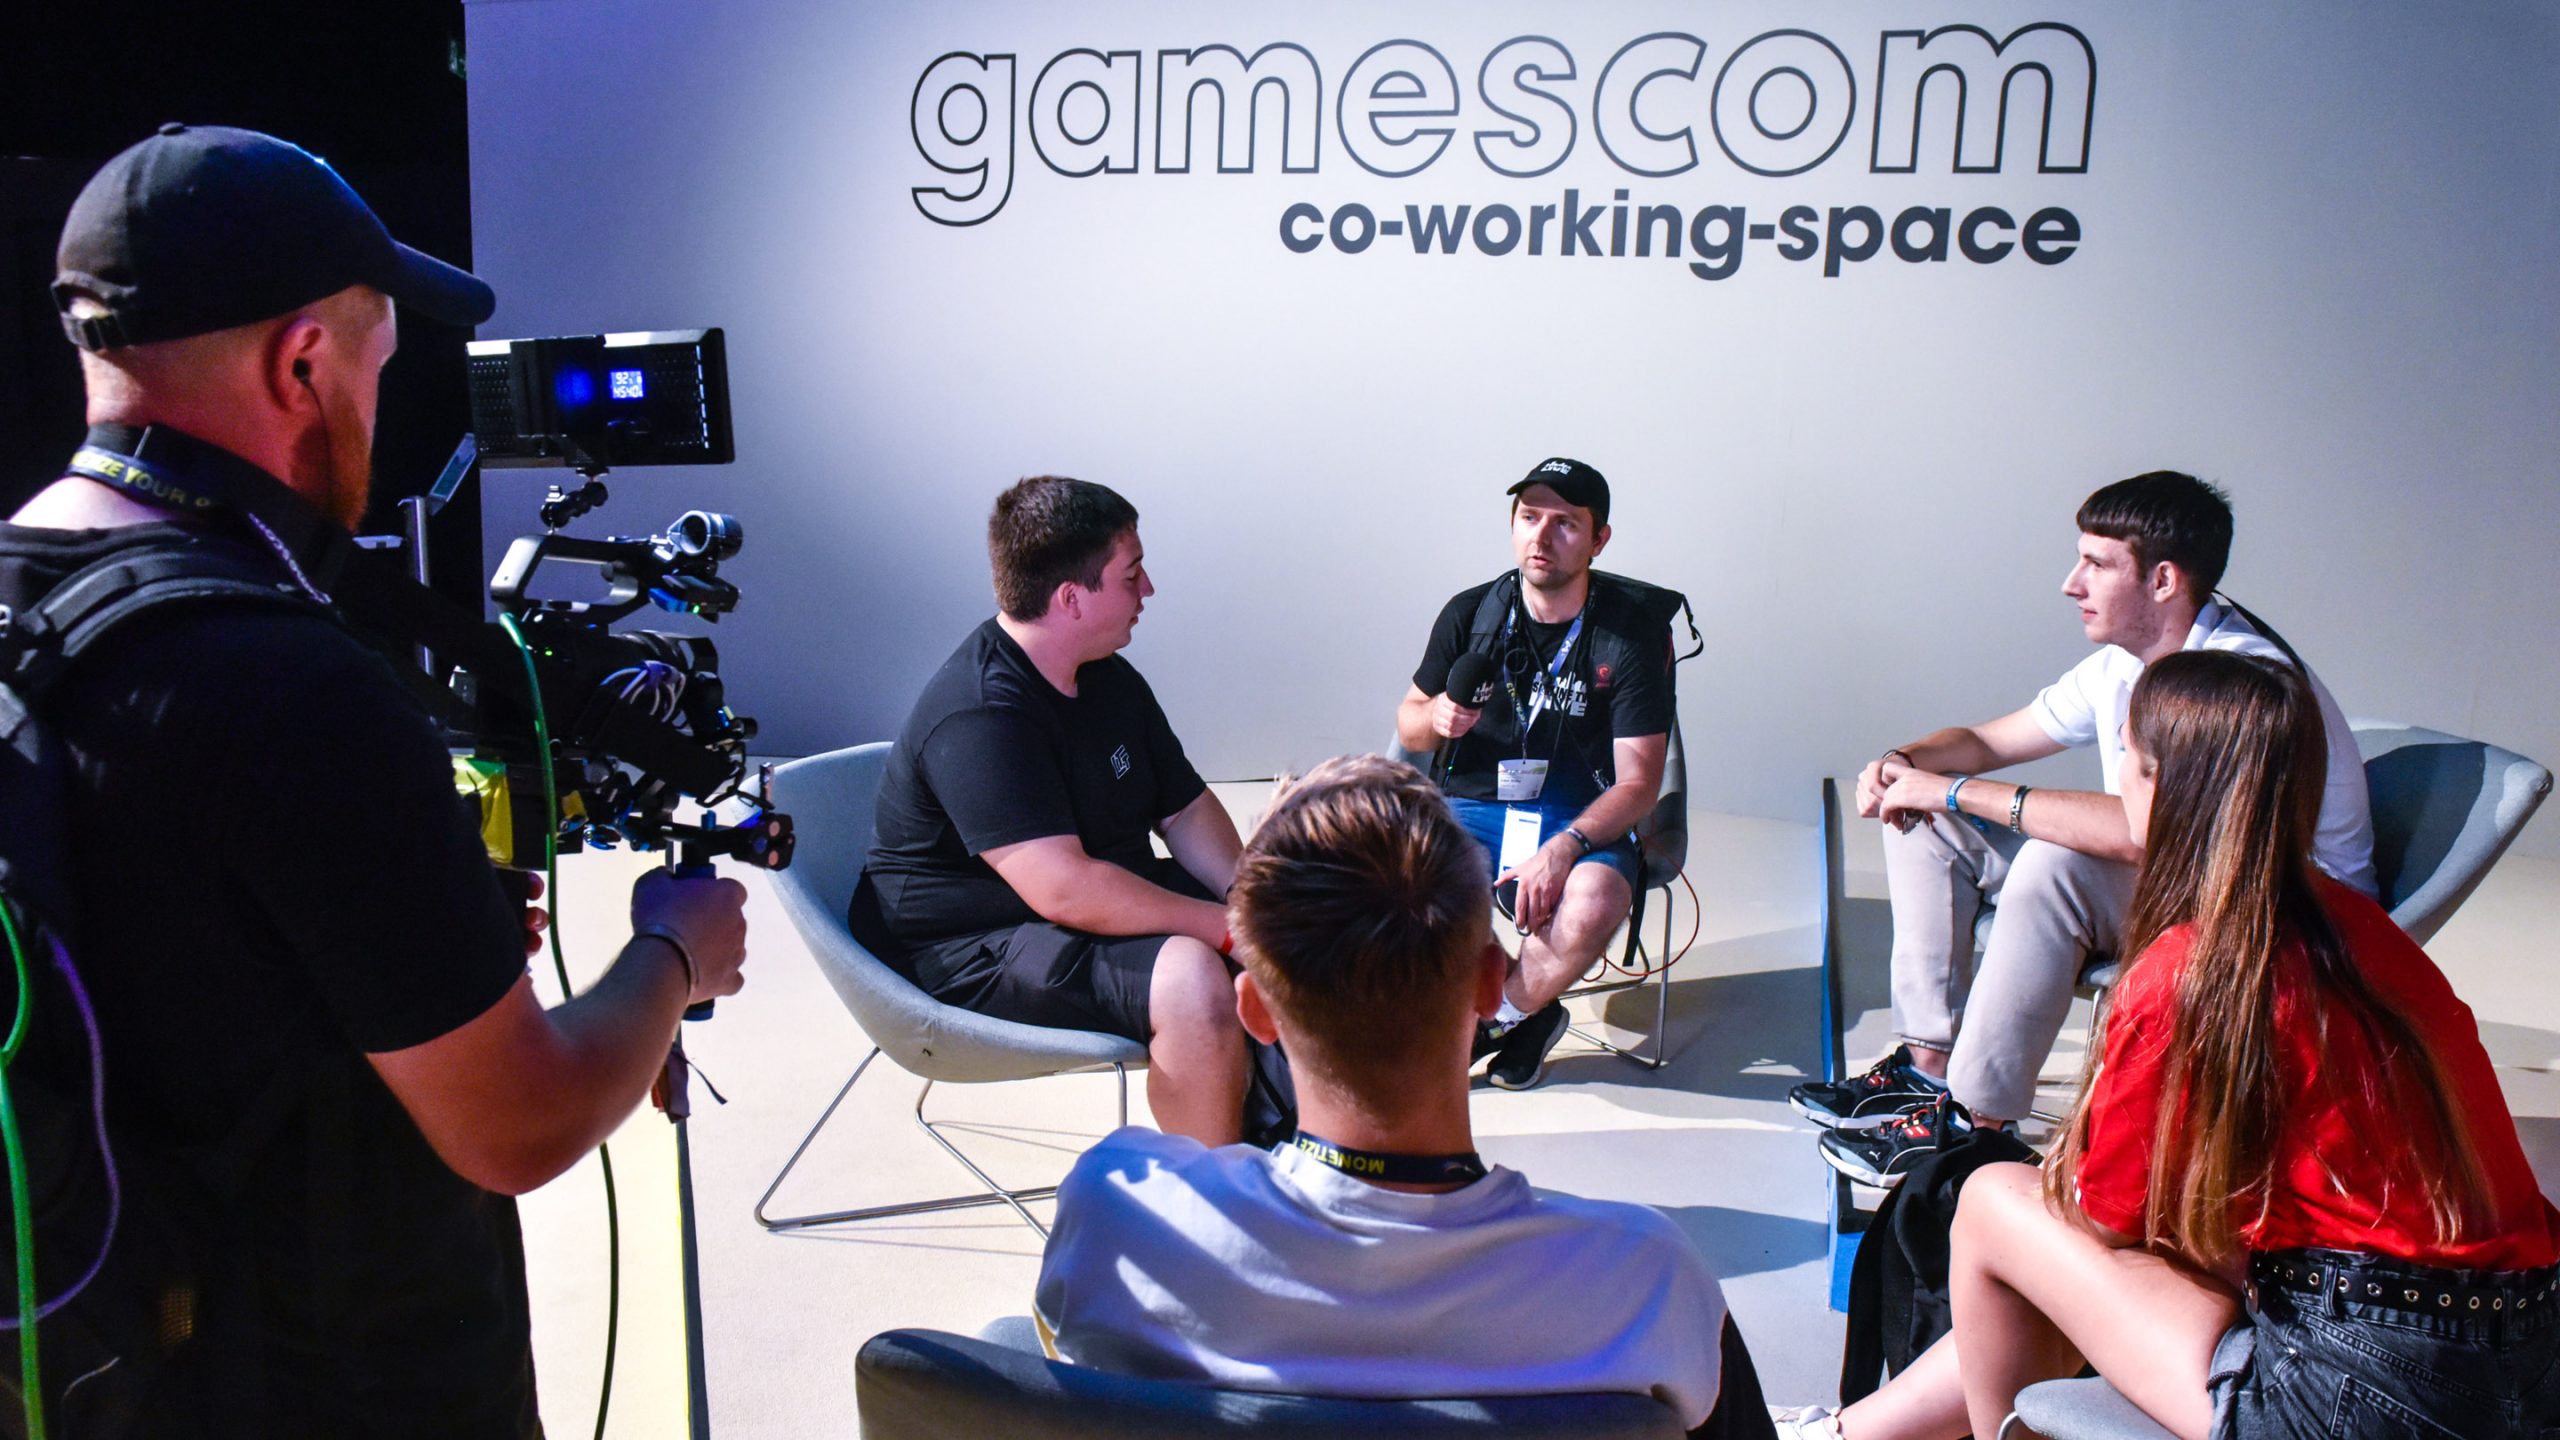 gamescom co-working-space, Halle 11.3, gamescom 2022